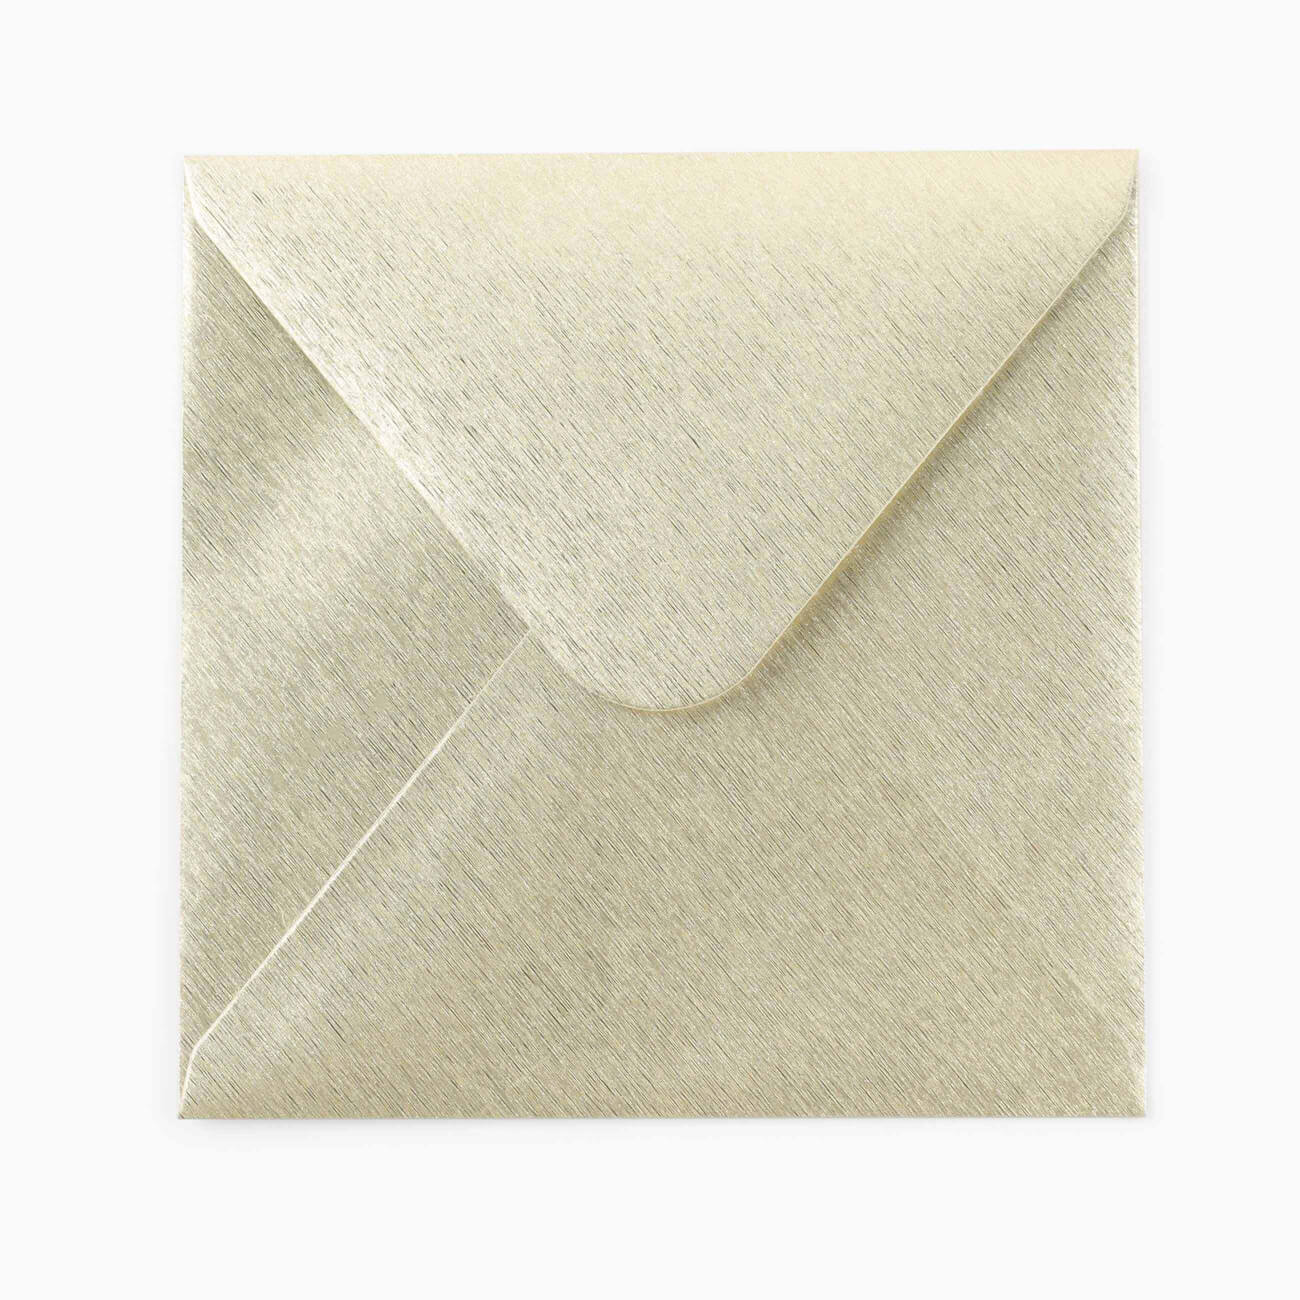 Конверт подарочный, 15 см, бумага, квадратный, золотистый, Congrats открытка конверт на магнитах